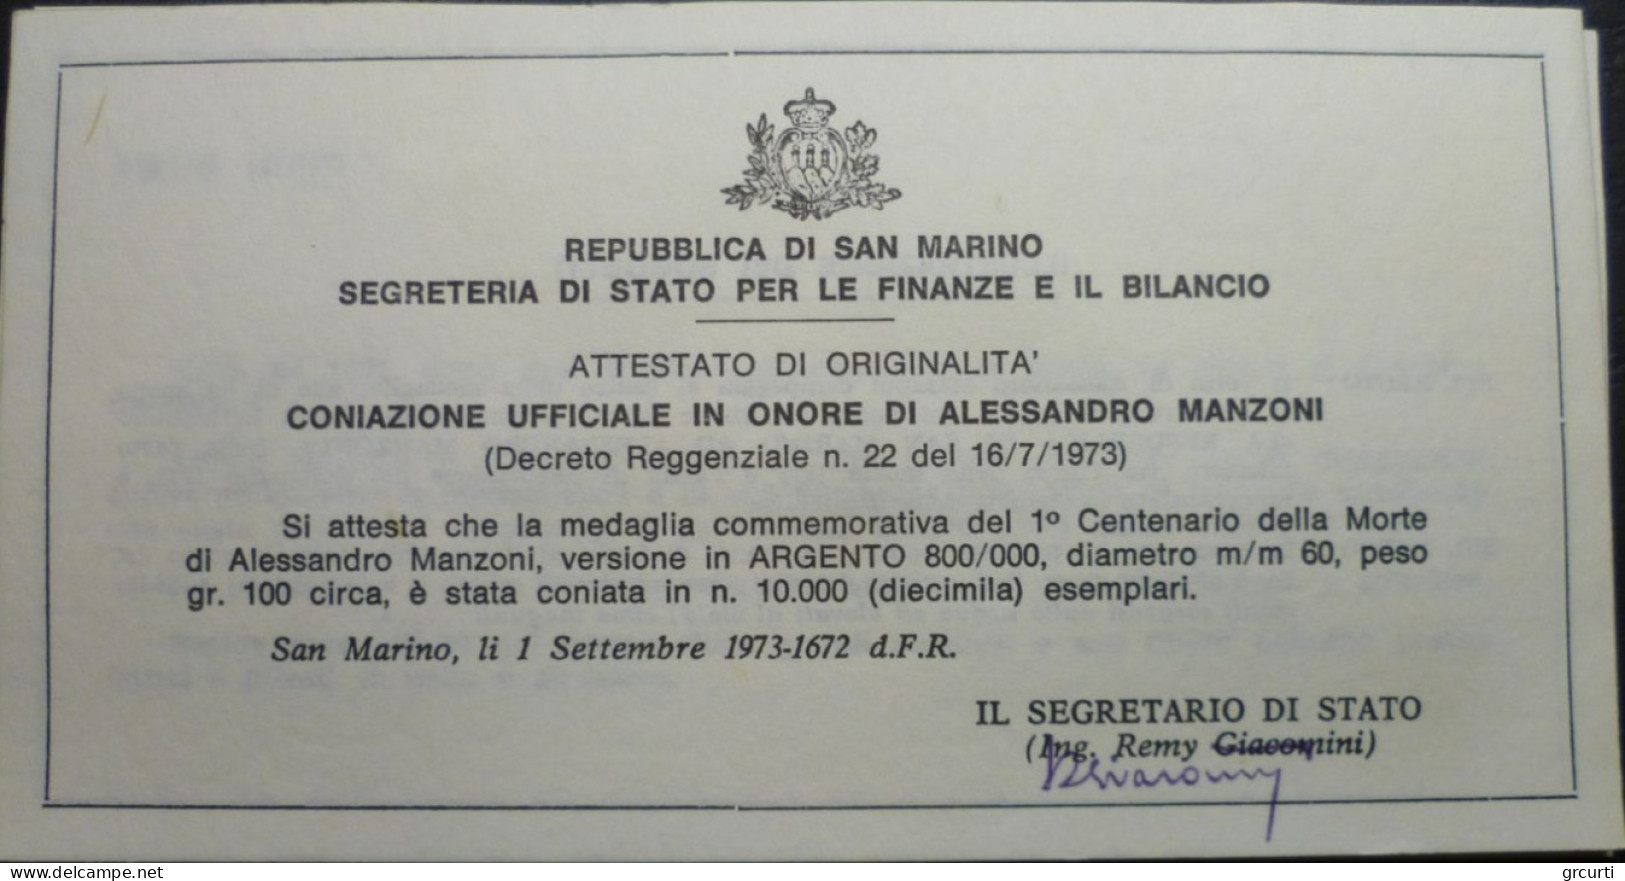 San Marino - 1973 - Medaglie ufficiali per il Centenario della morte di Alessandro Manzoni